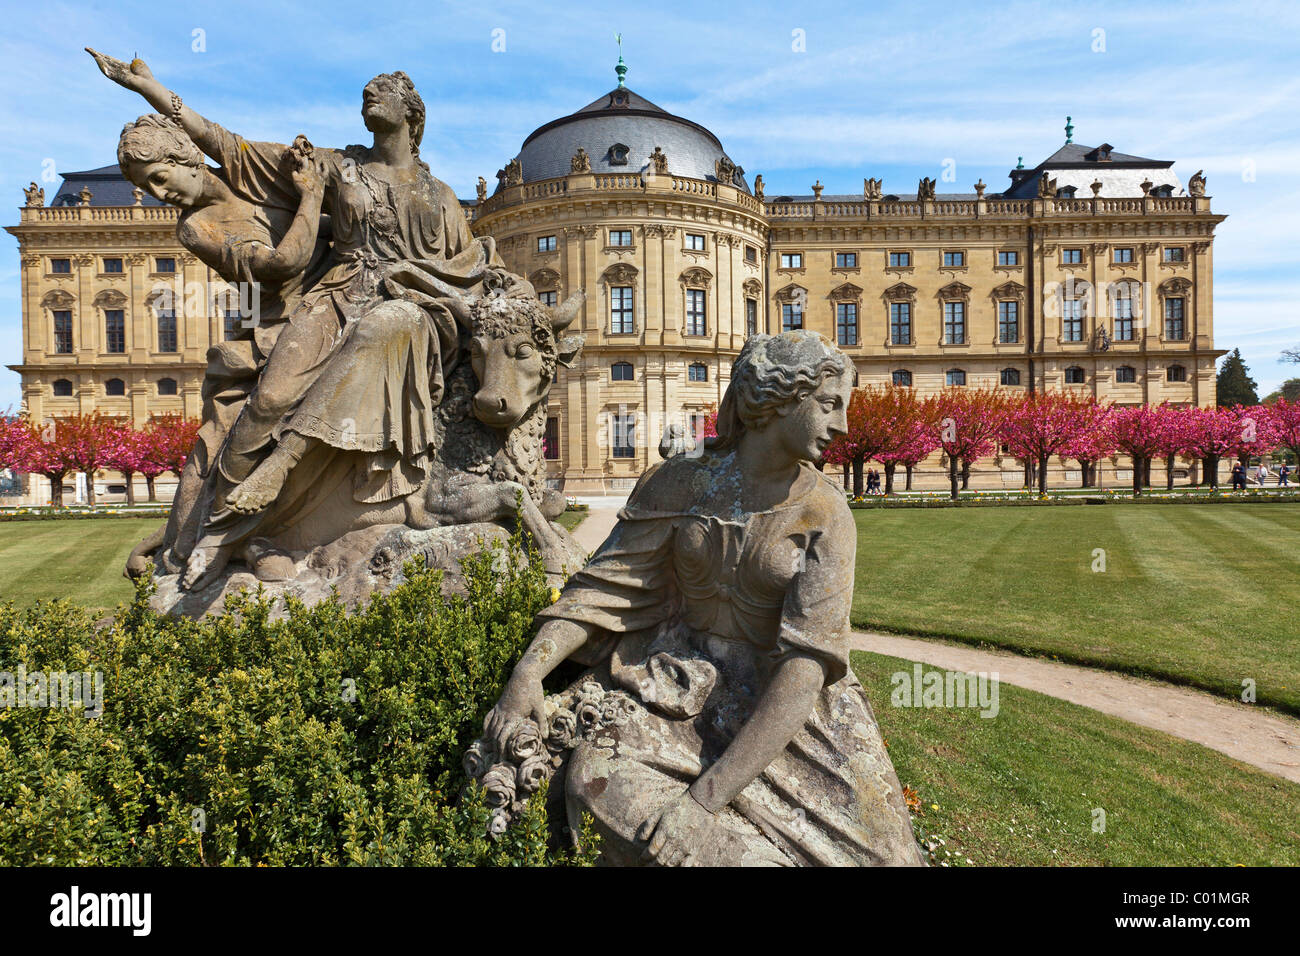 Jardins et cour Wuerzburg Residenz, un palais baroque, UNESCO World Heritage Site, Wuerzburg, Bavaria, Germany, Europe Banque D'Images